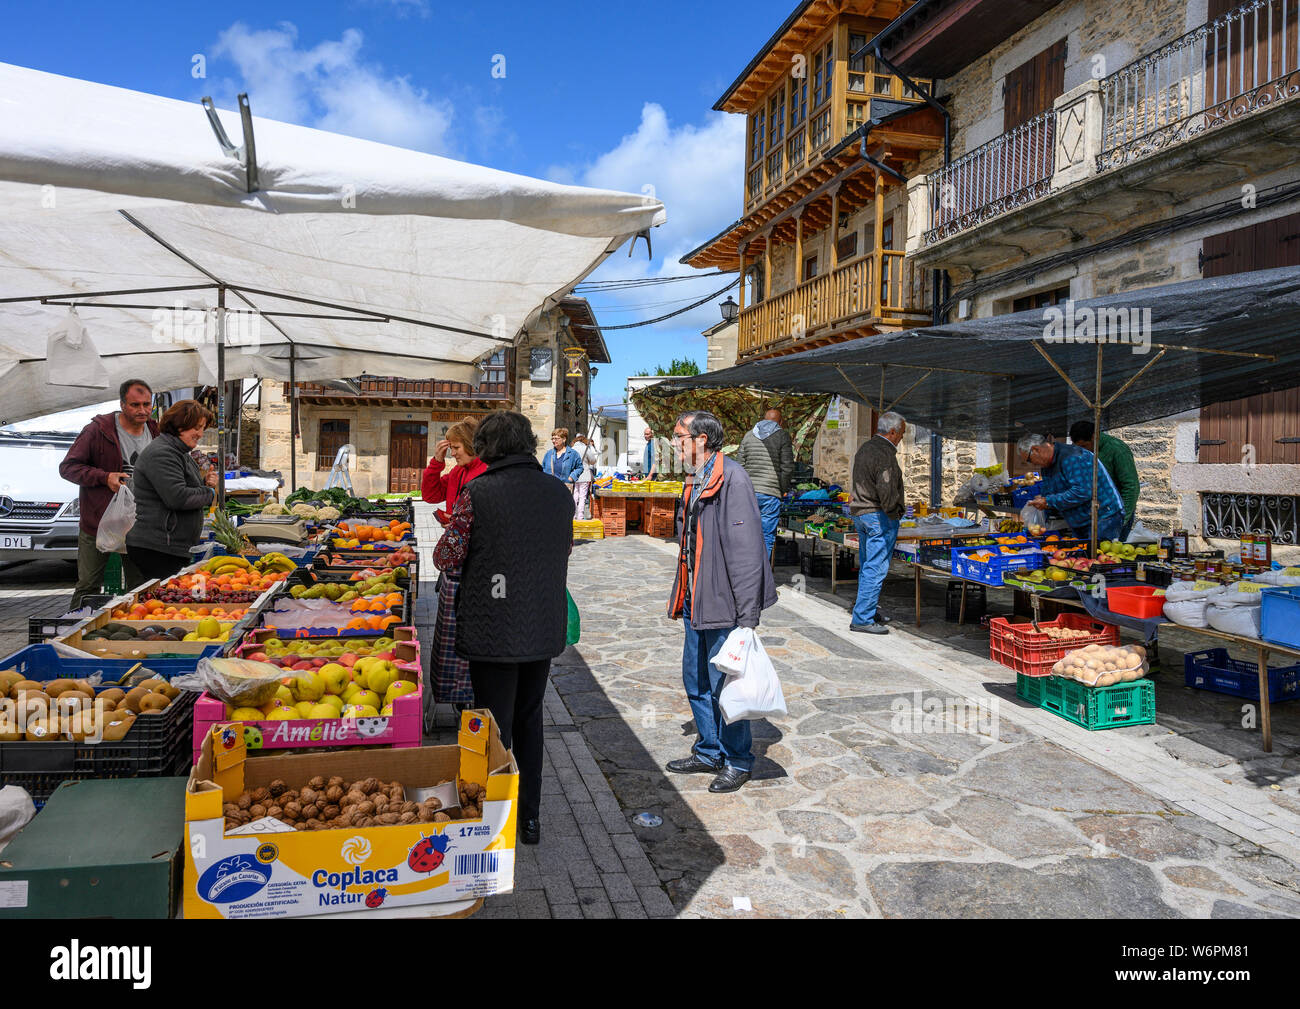 Market day in the little town of Puebla de Sanabria, Zamora Province, Castilla y Leon, Spain. Stock Photo